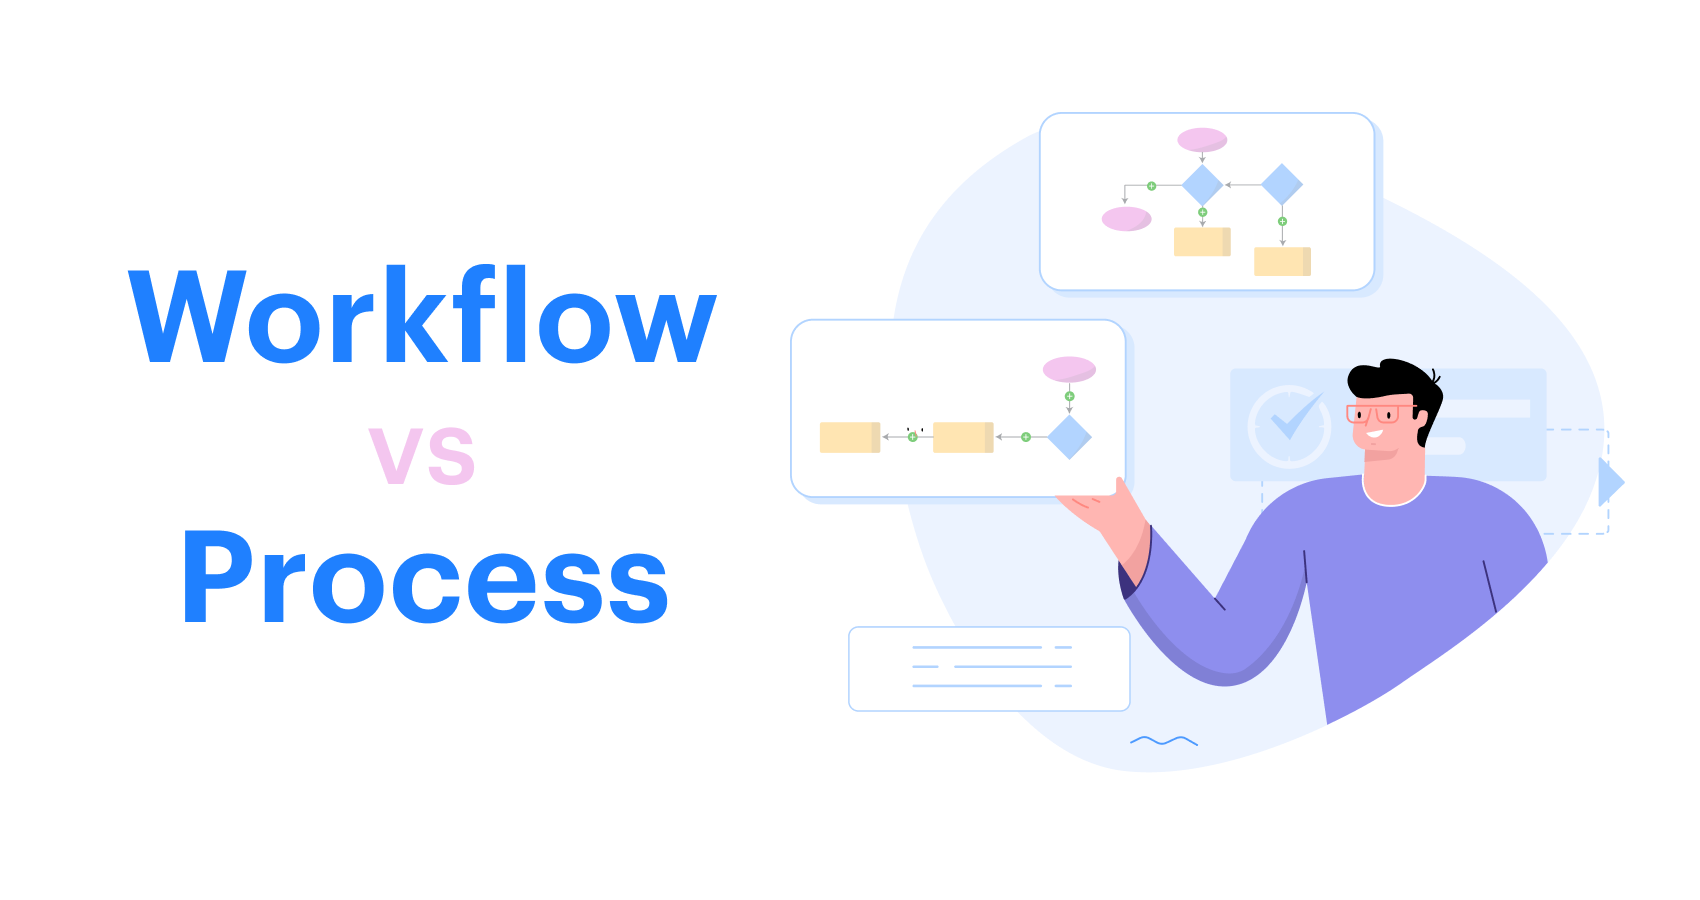 Workflow vs Process